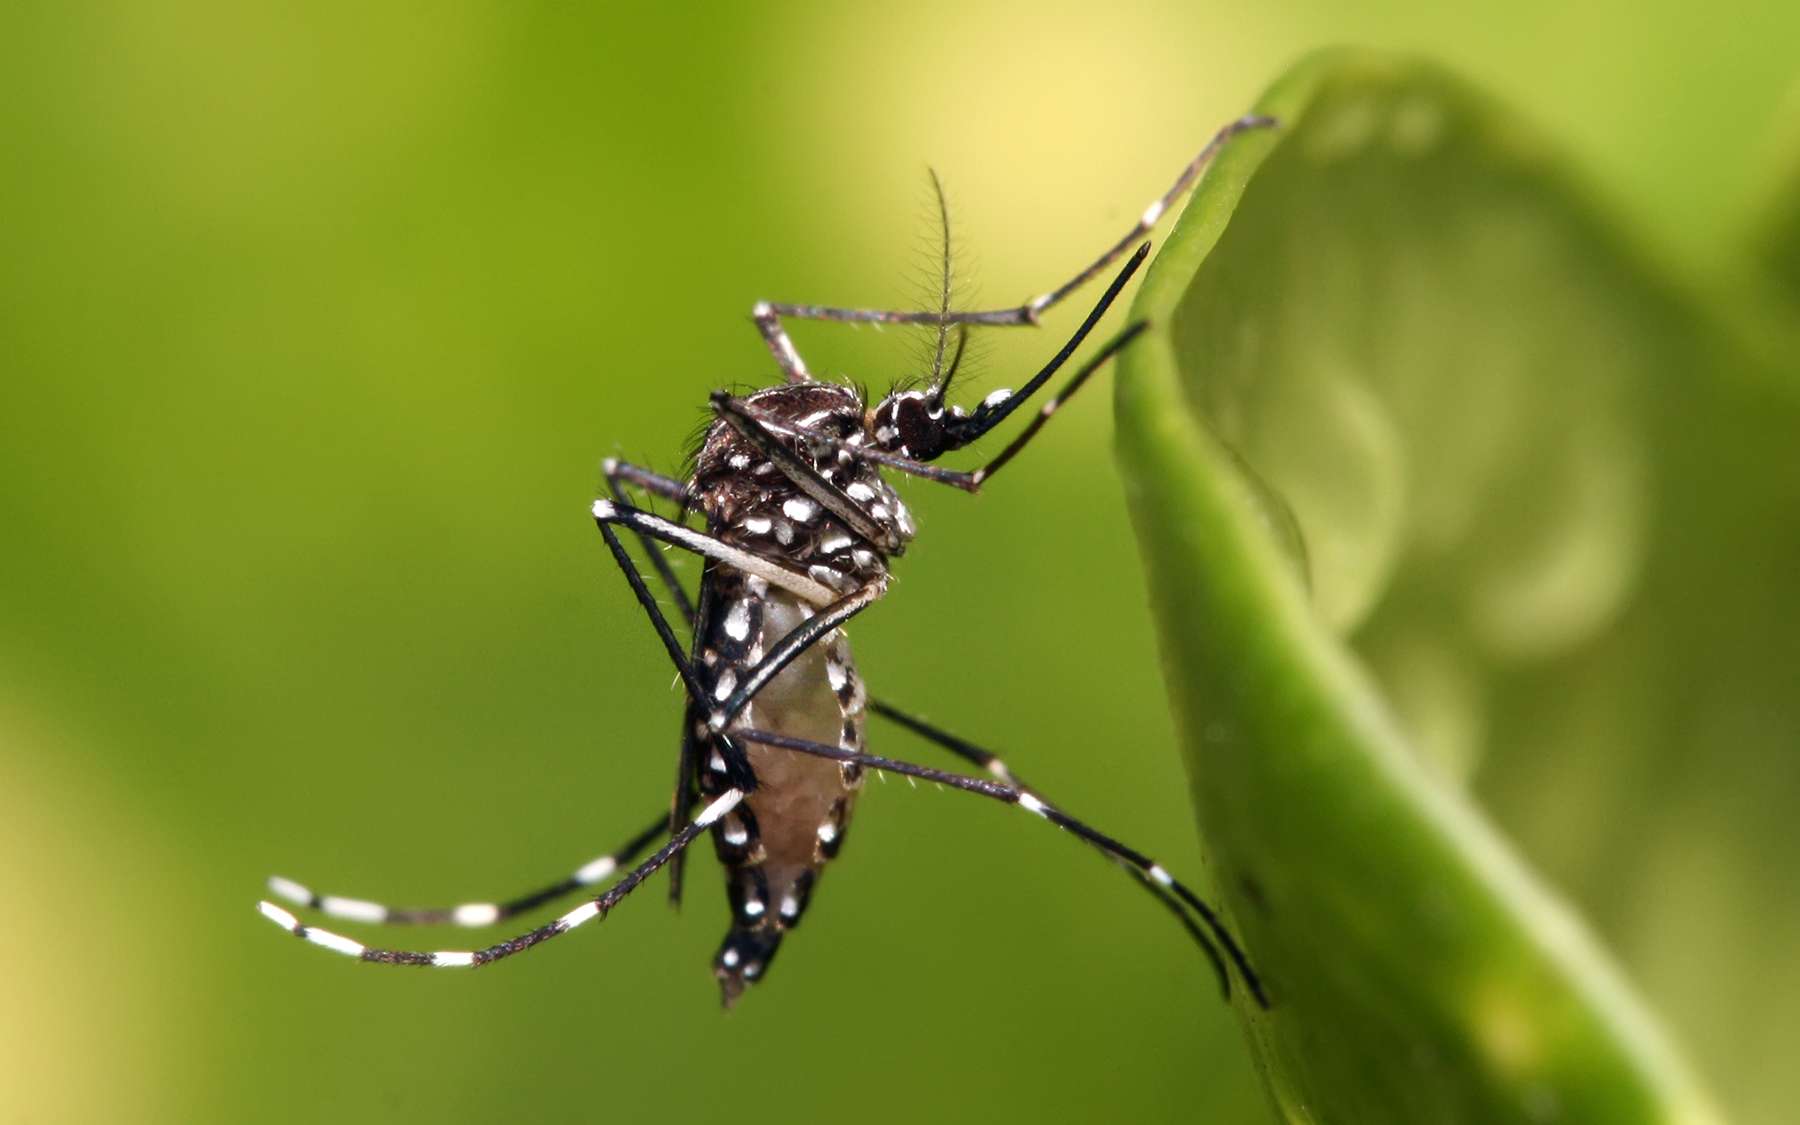 Le moustique Aedes aegypti, proche du moustique-tigre (A. albopictus), peut transmettre les arbovirus responsables de la dengue, du chikungunya, de la fièvre Zika et de la fièvre jaune. © Muhammad Mahdi Karim, GFDL 1.2